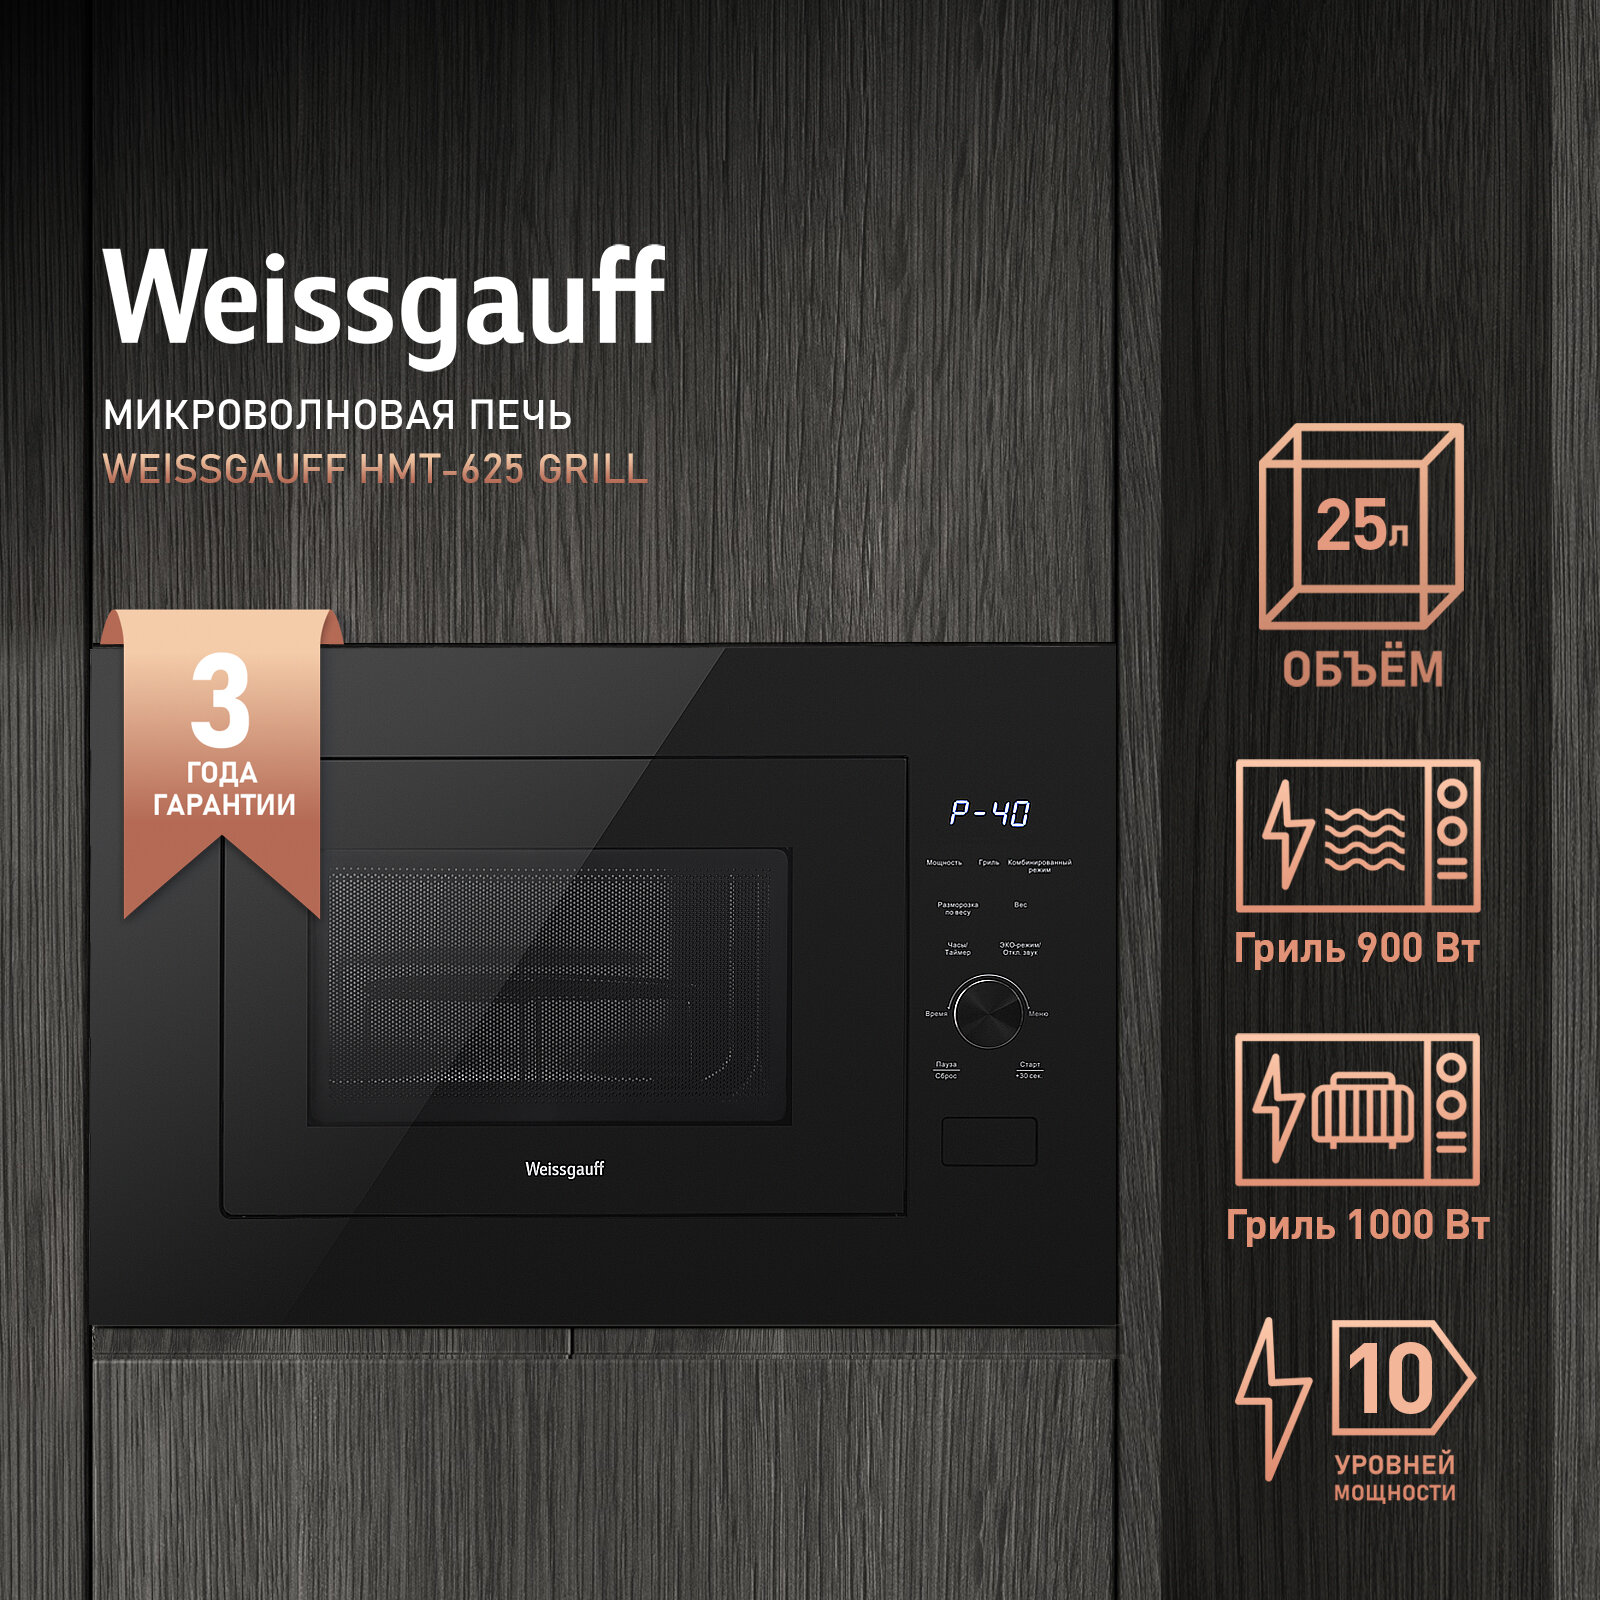 Встраиваемая микроволновая печь Weissgauff HMT-625 Grill 3 года гарантии, объем 25 литров, гриль, разморозка по весу, Блокировка от детей